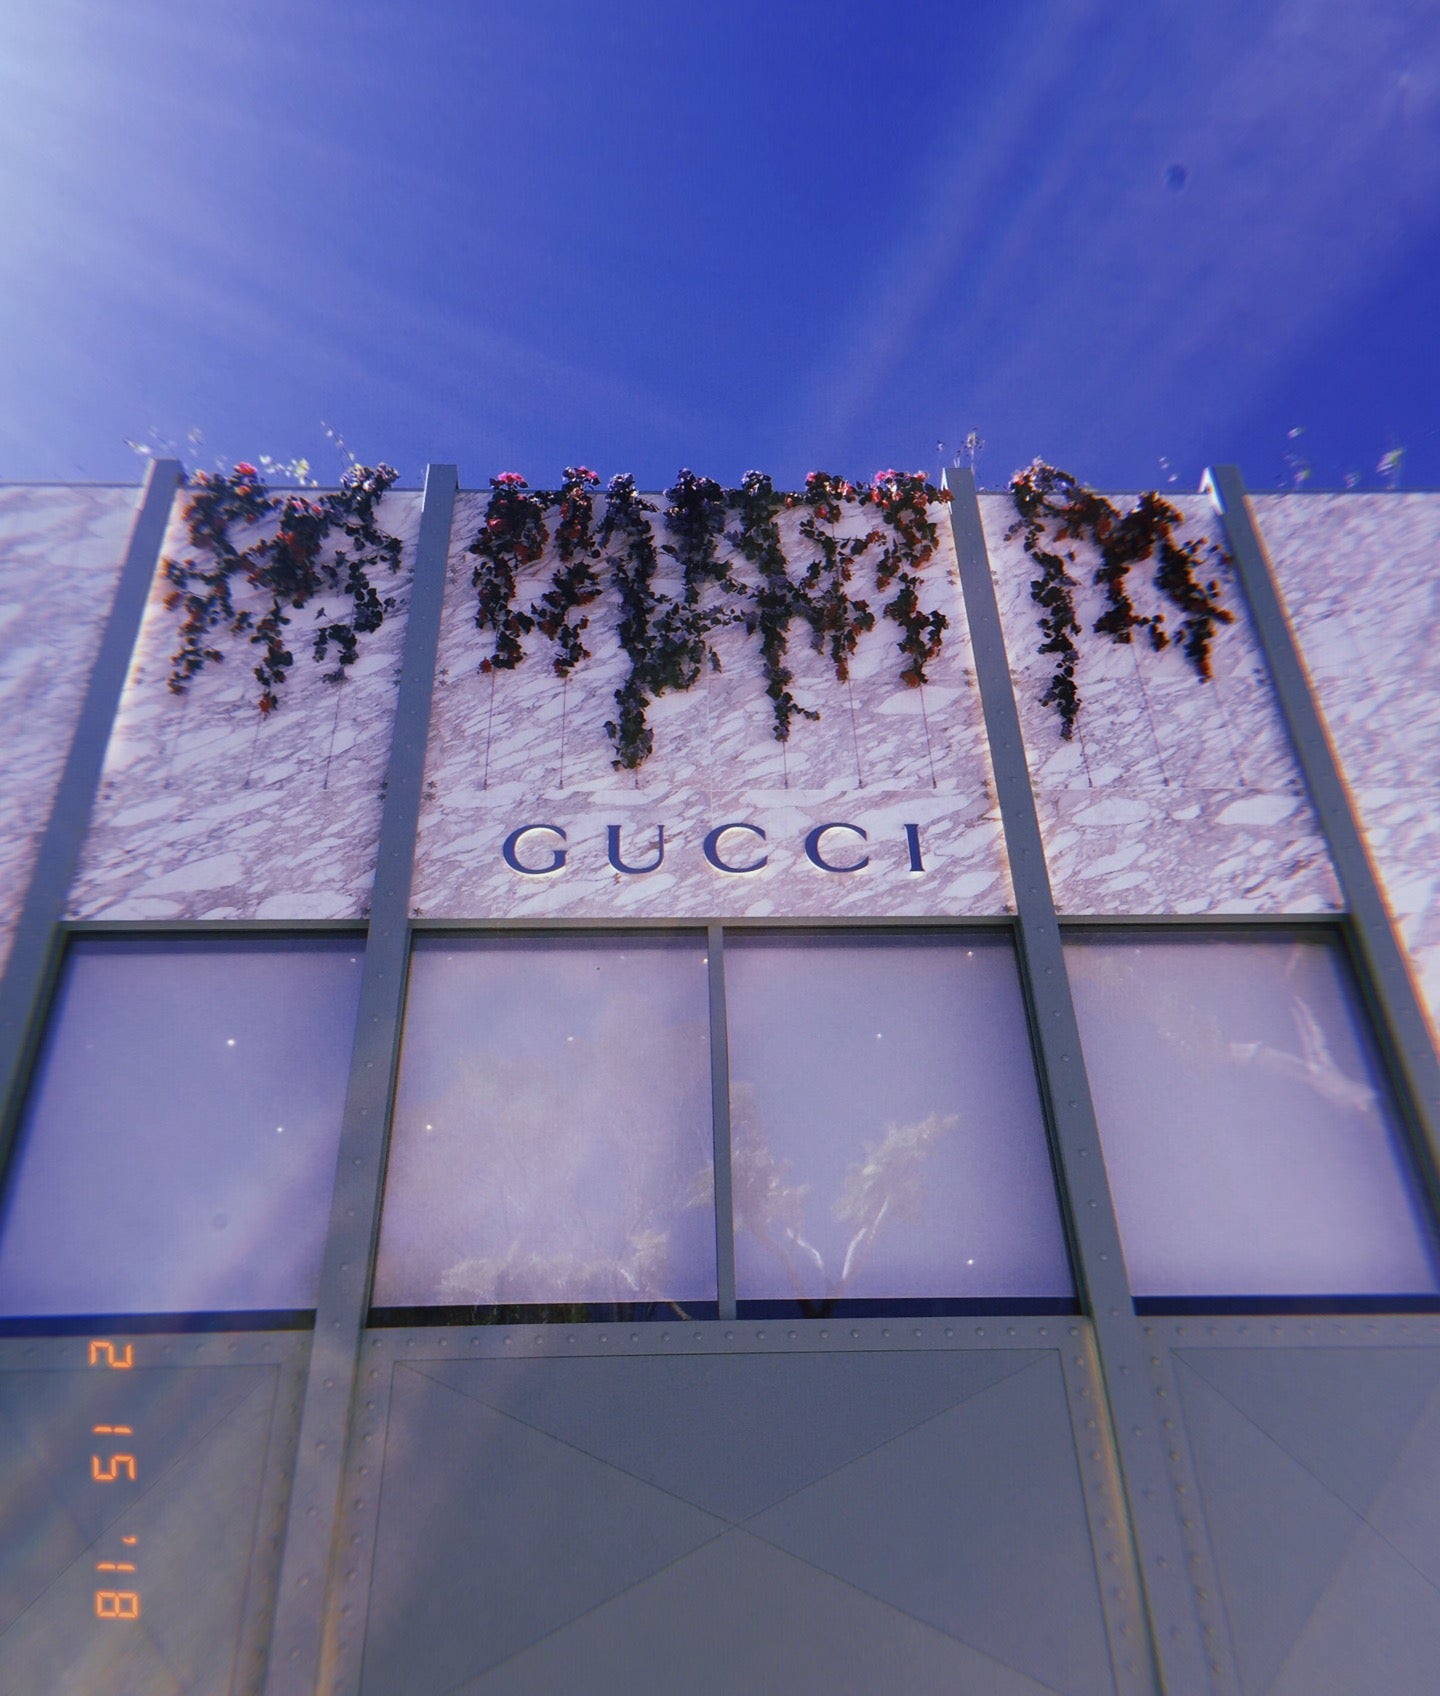 Gucci, 139 NE 41st St, Miami, FL, Clothing Retail - MapQuest